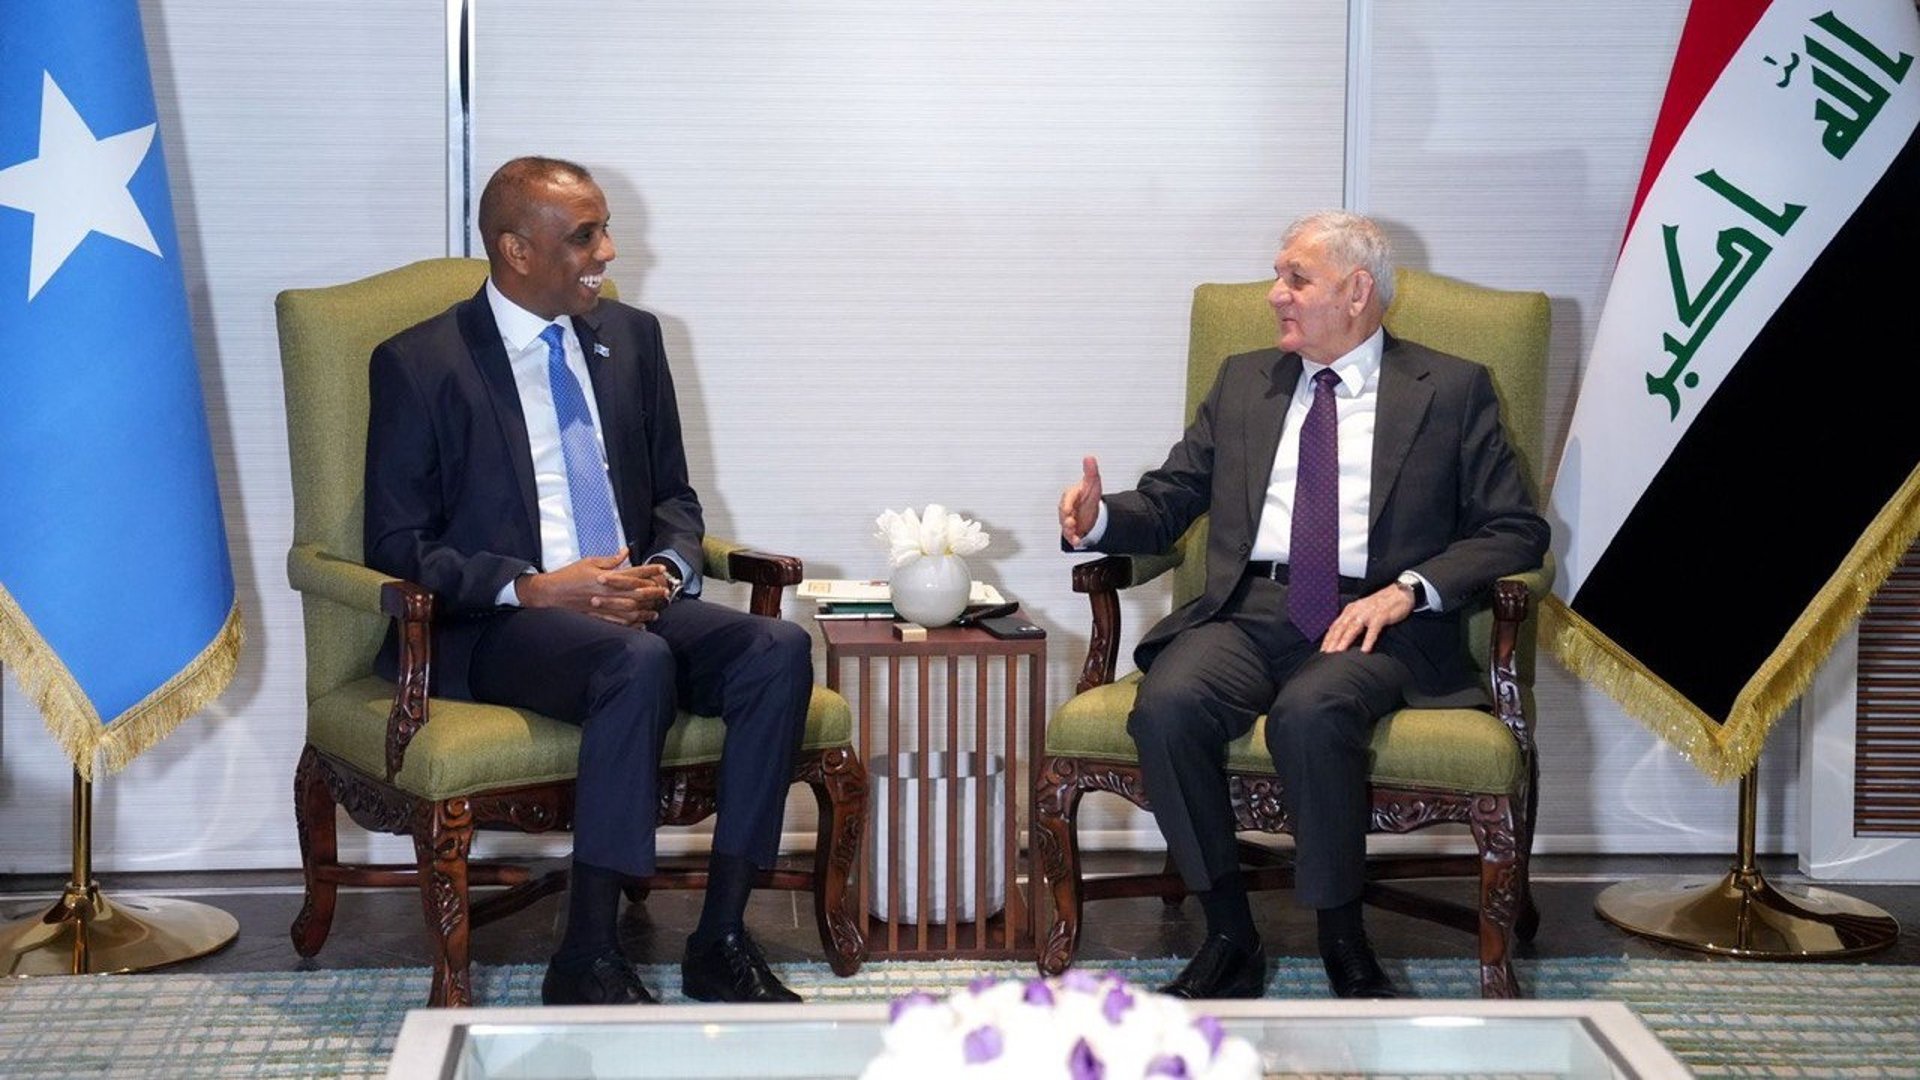 صور من اللقاء بين رئيس الجمهورية العراقي ورئيس وزراء جمهورية الصومال